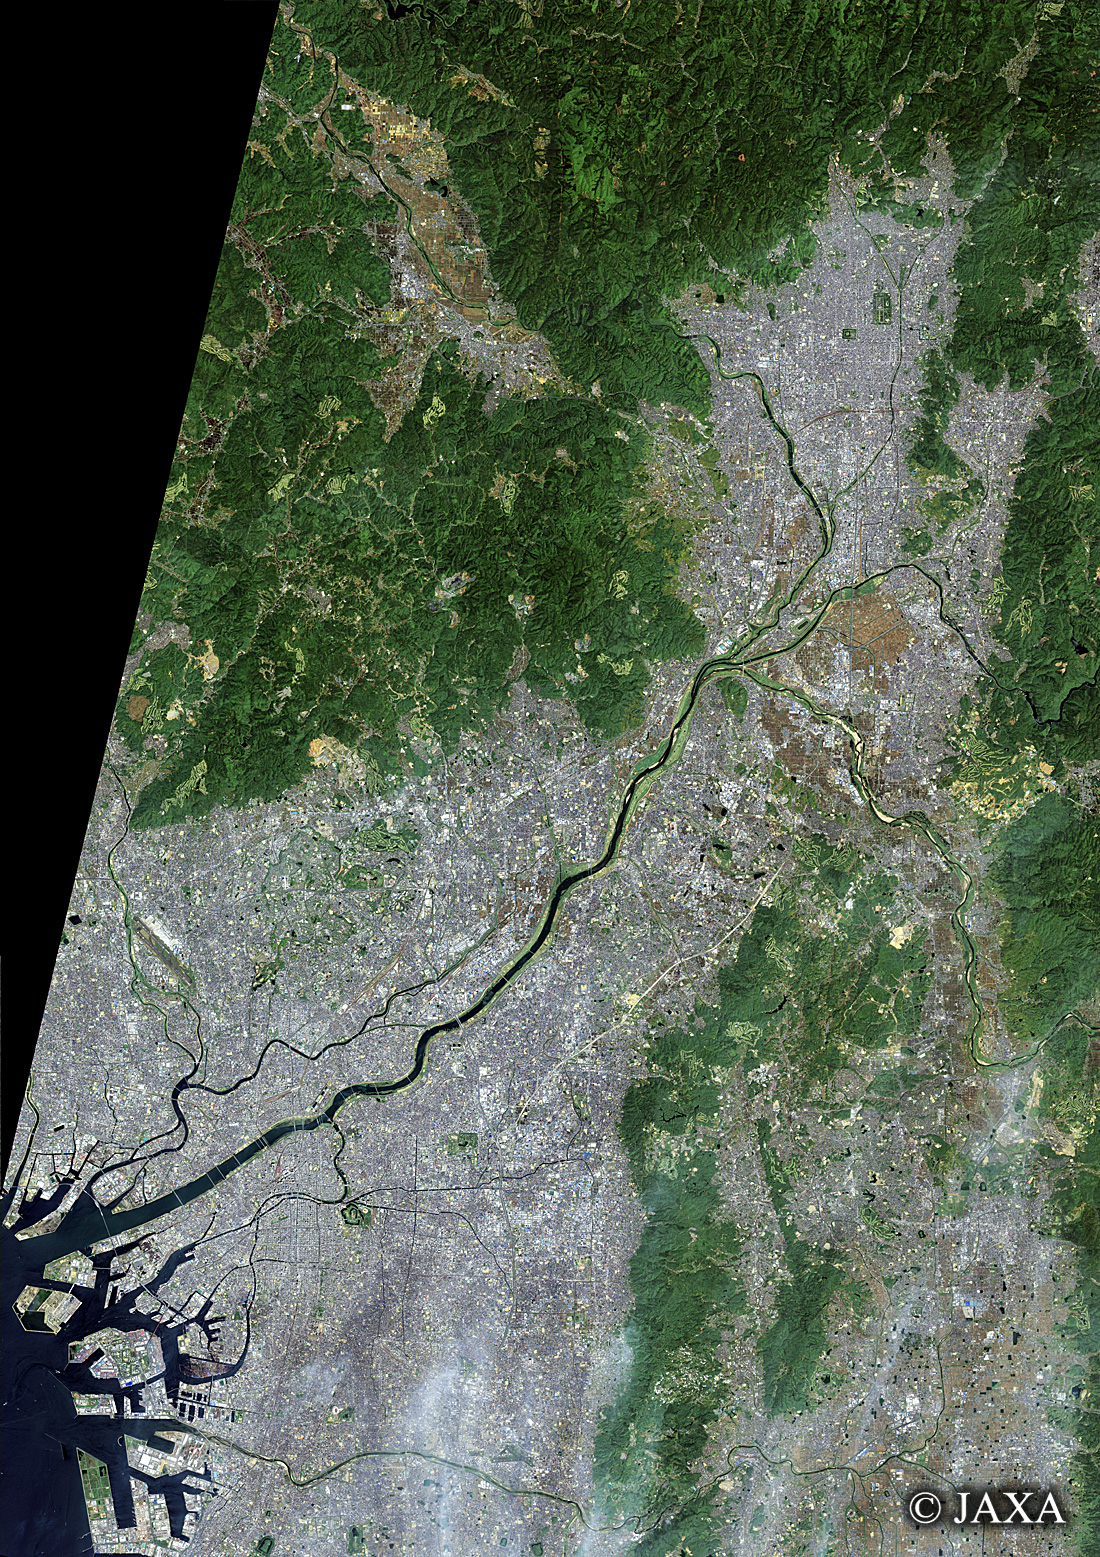 だいちから見た日本の都市 京都府、大阪府、奈良県:衛星画像